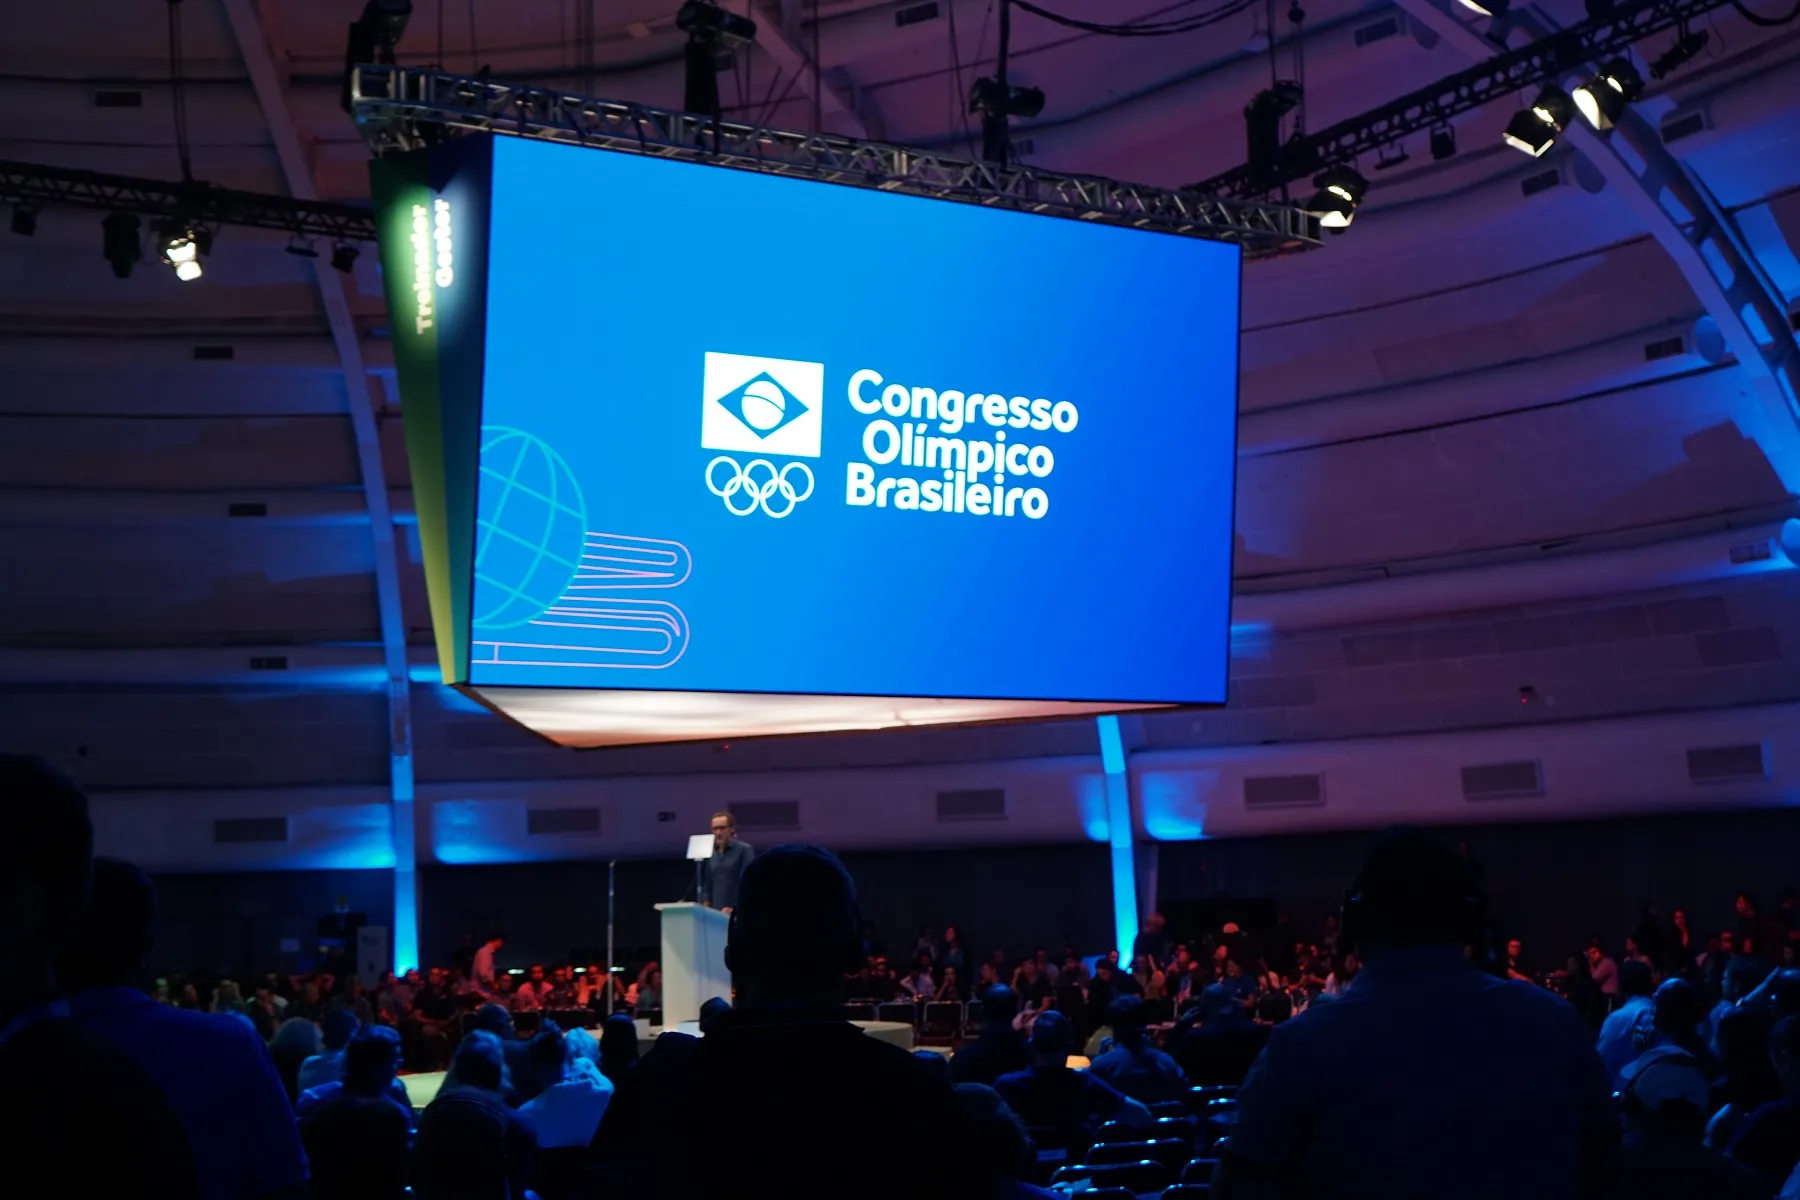 O II Congresso Olímpico Brasileiro apresenta o tema Planejamento